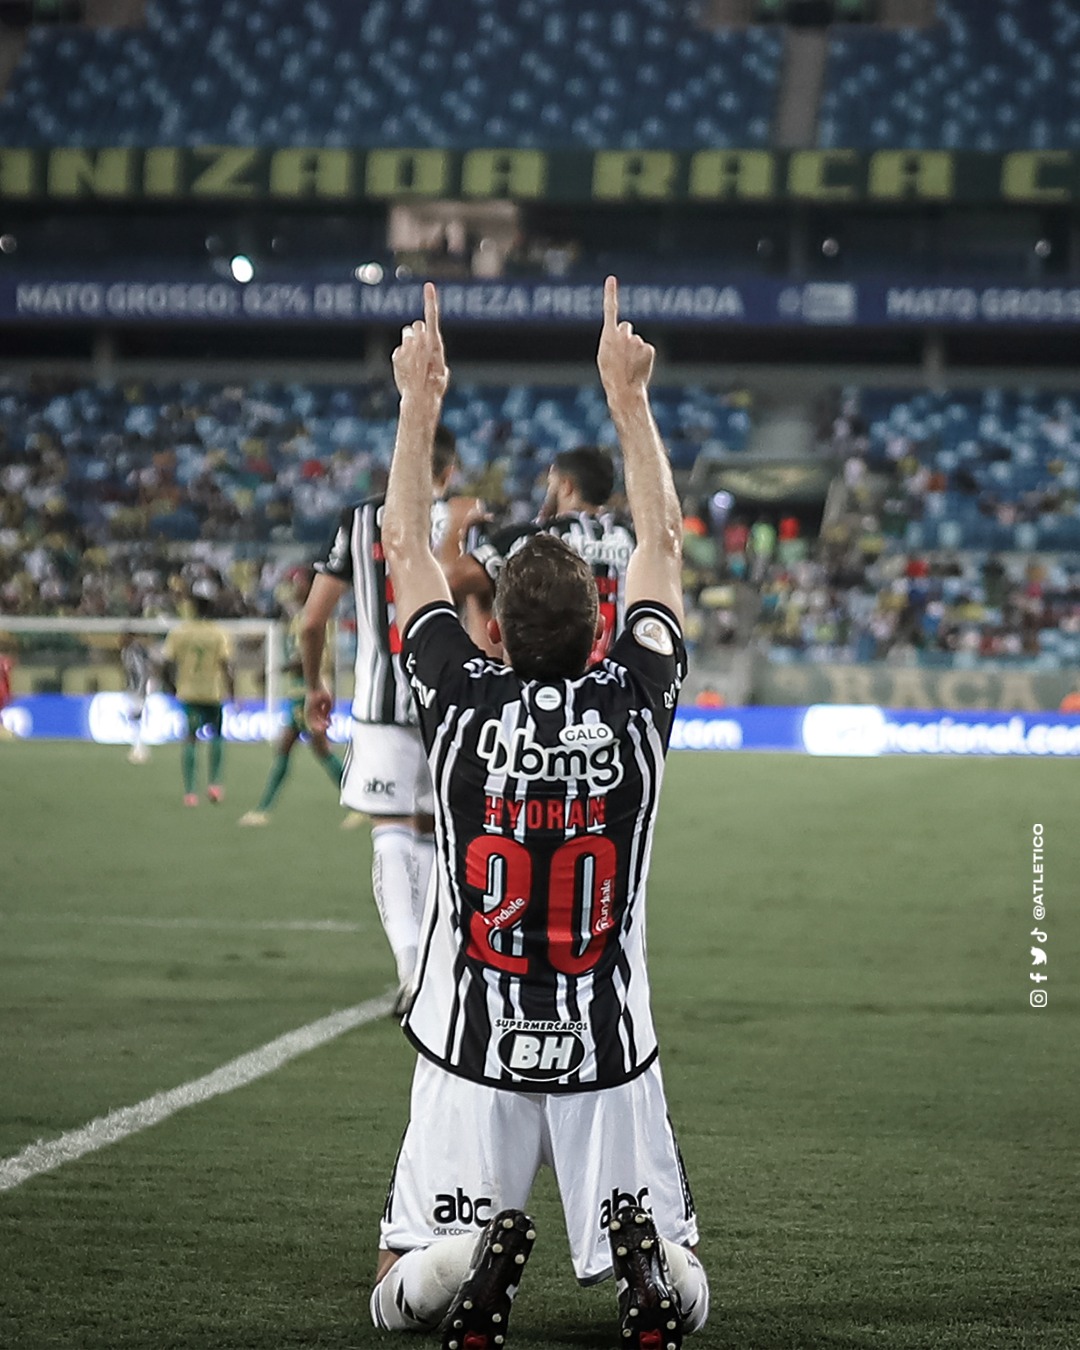 G O L A Ç O! 👏⚽ Hyoran fez um - Clube Atlético Mineiro